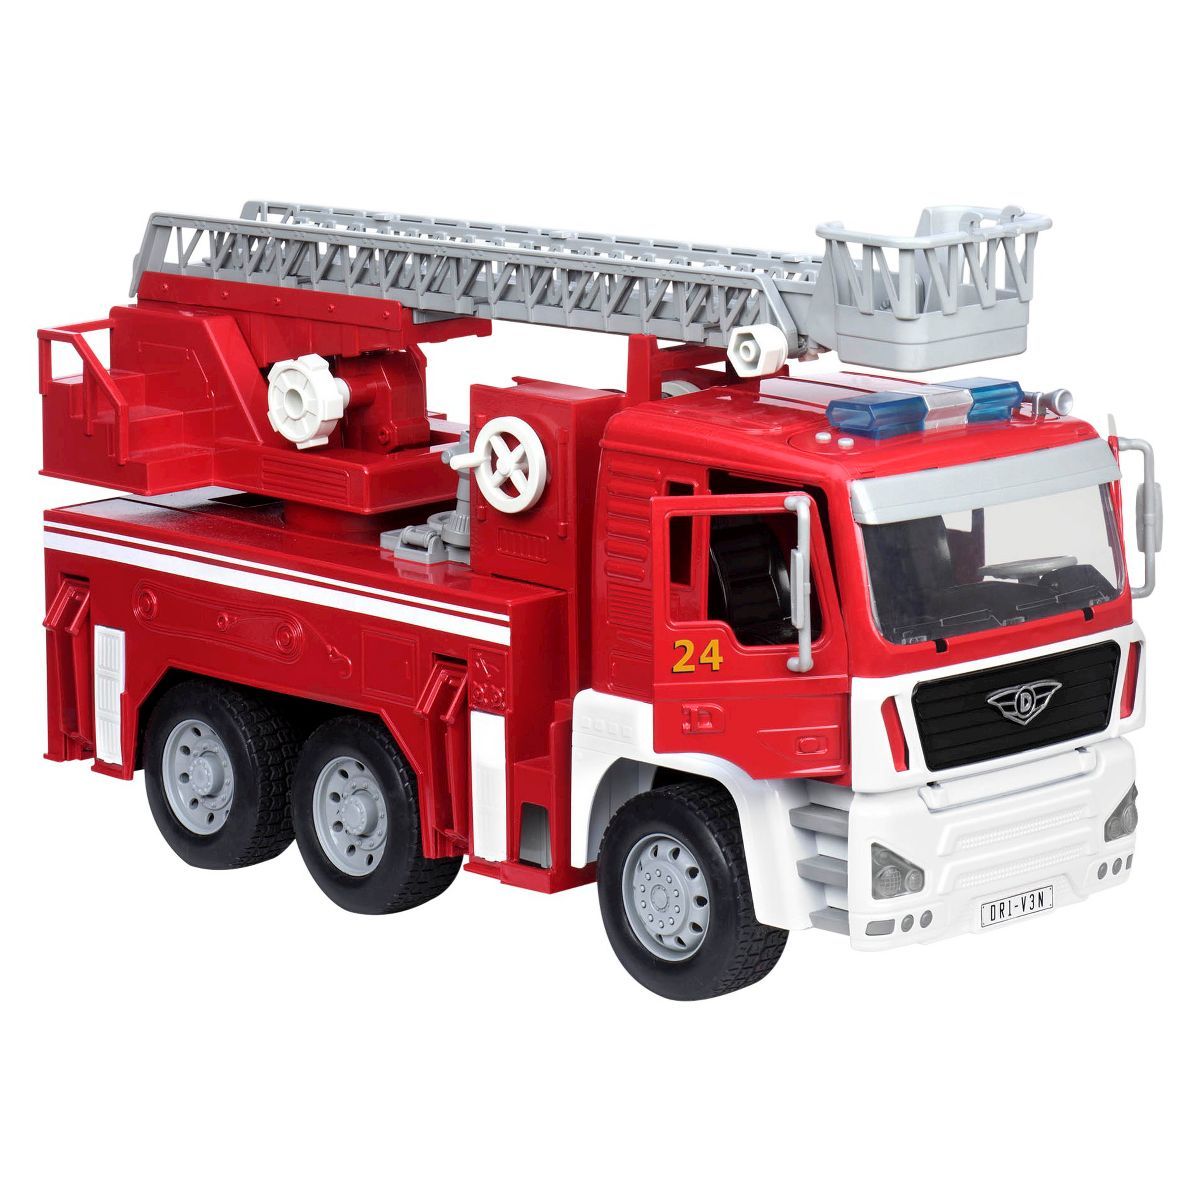 DRIVEN by Battat – Toy Fire Truck – Standard Series | Target